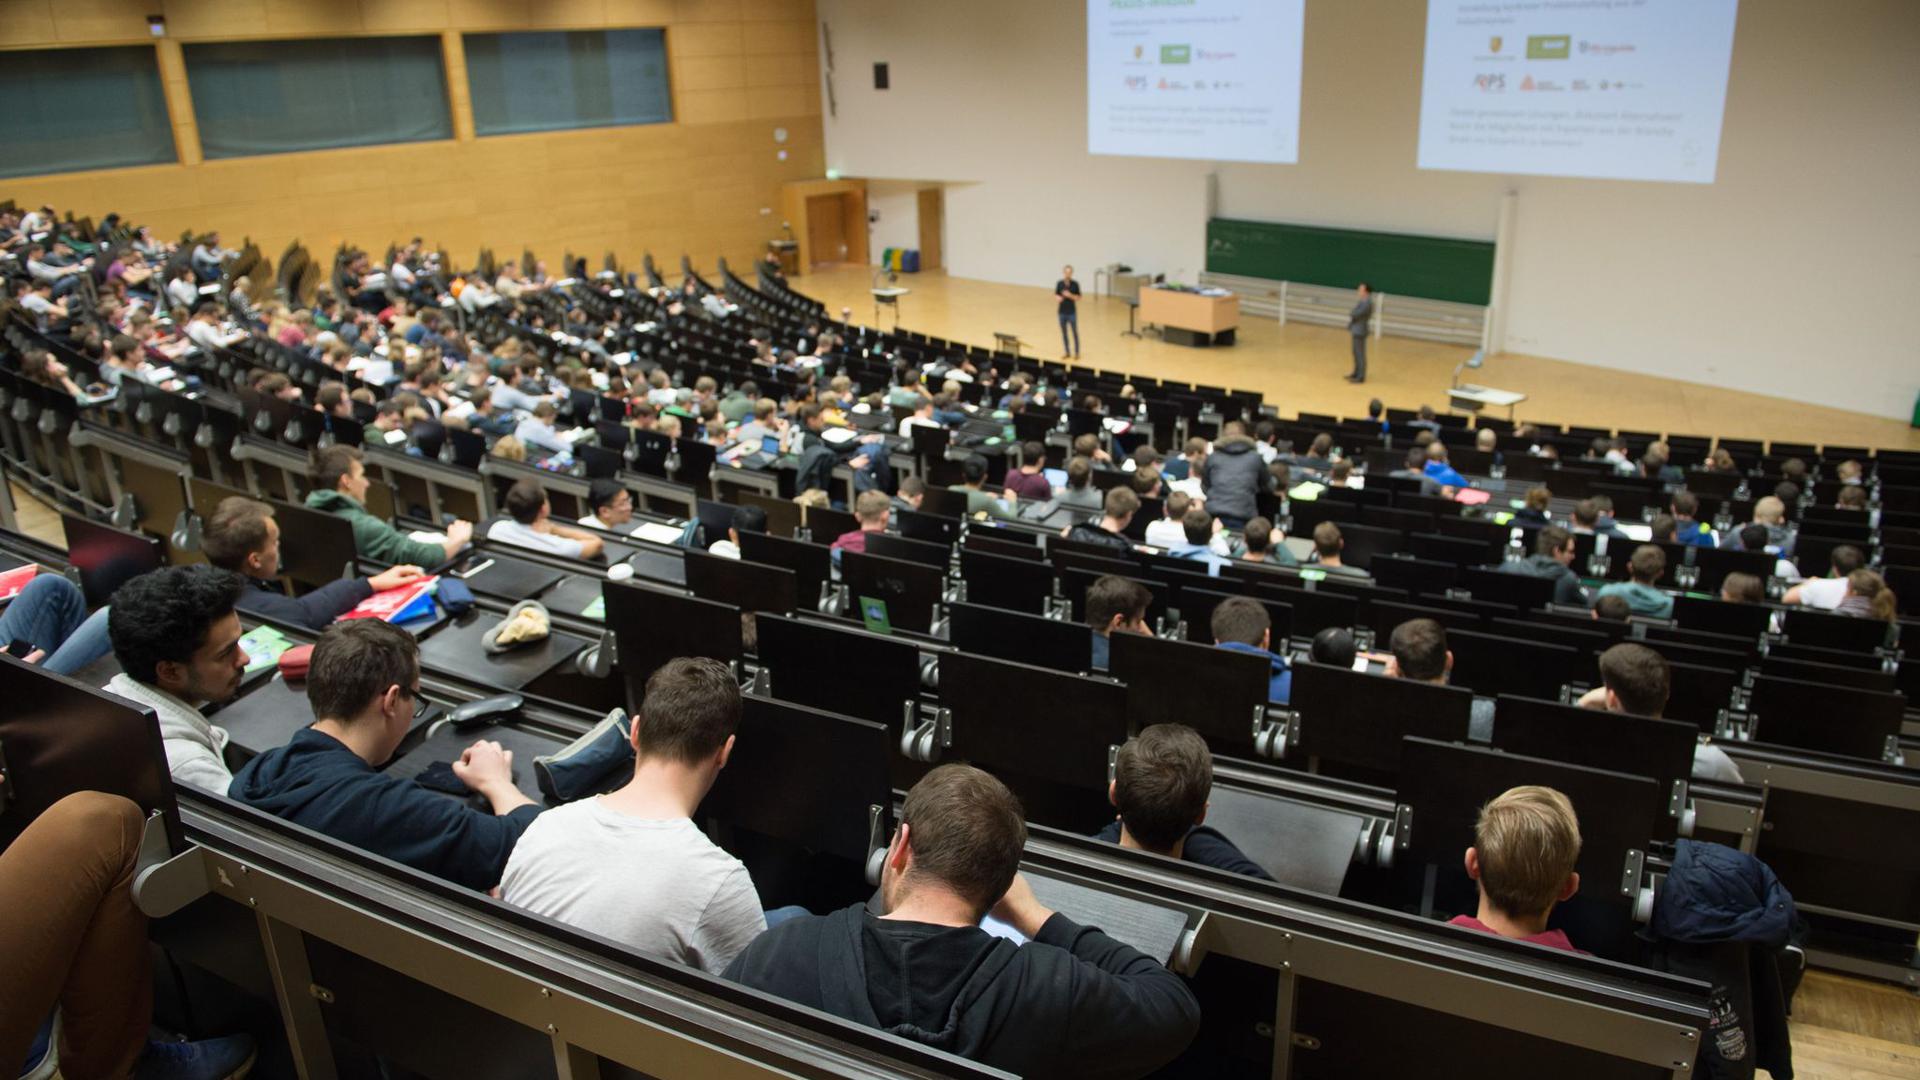 ARCHIV - Studierende sitzen in einem Hörsaal der Technischen Universität Dresden. Foto: Sebastian Kahnert/dpa-Zentralbild/dpa